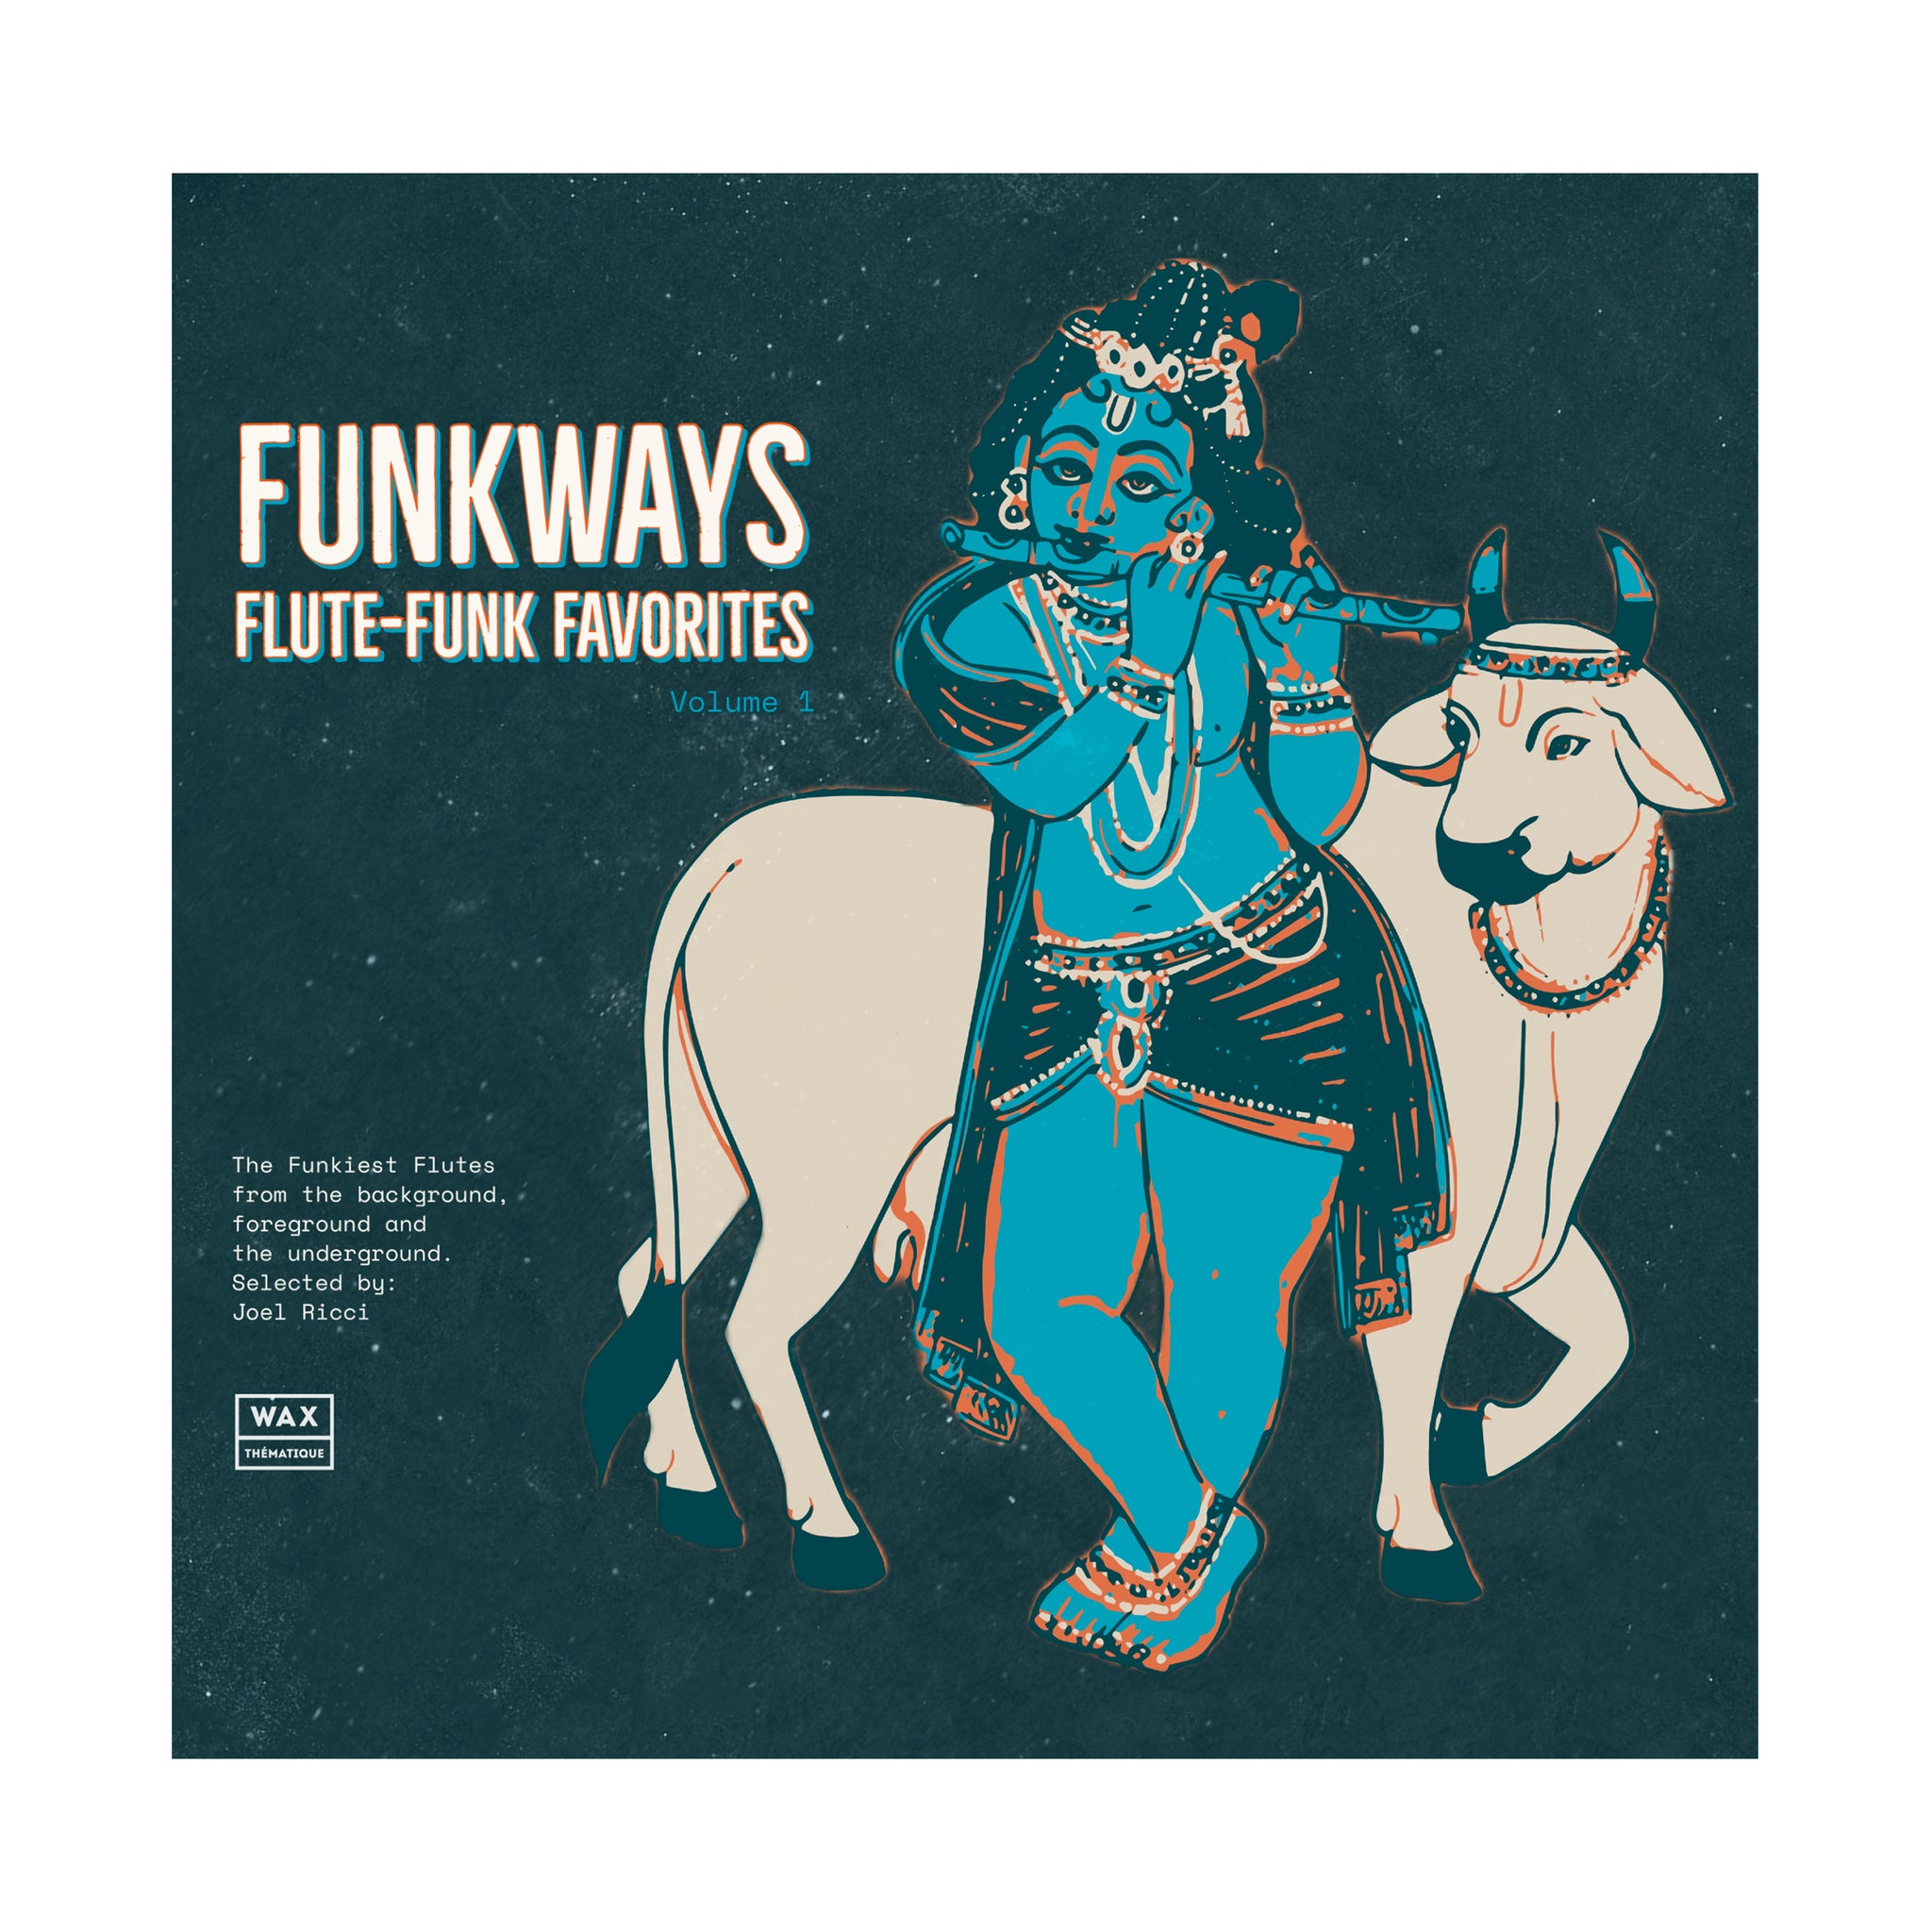 Funkways Flute-Funk Favorites Vol. 1